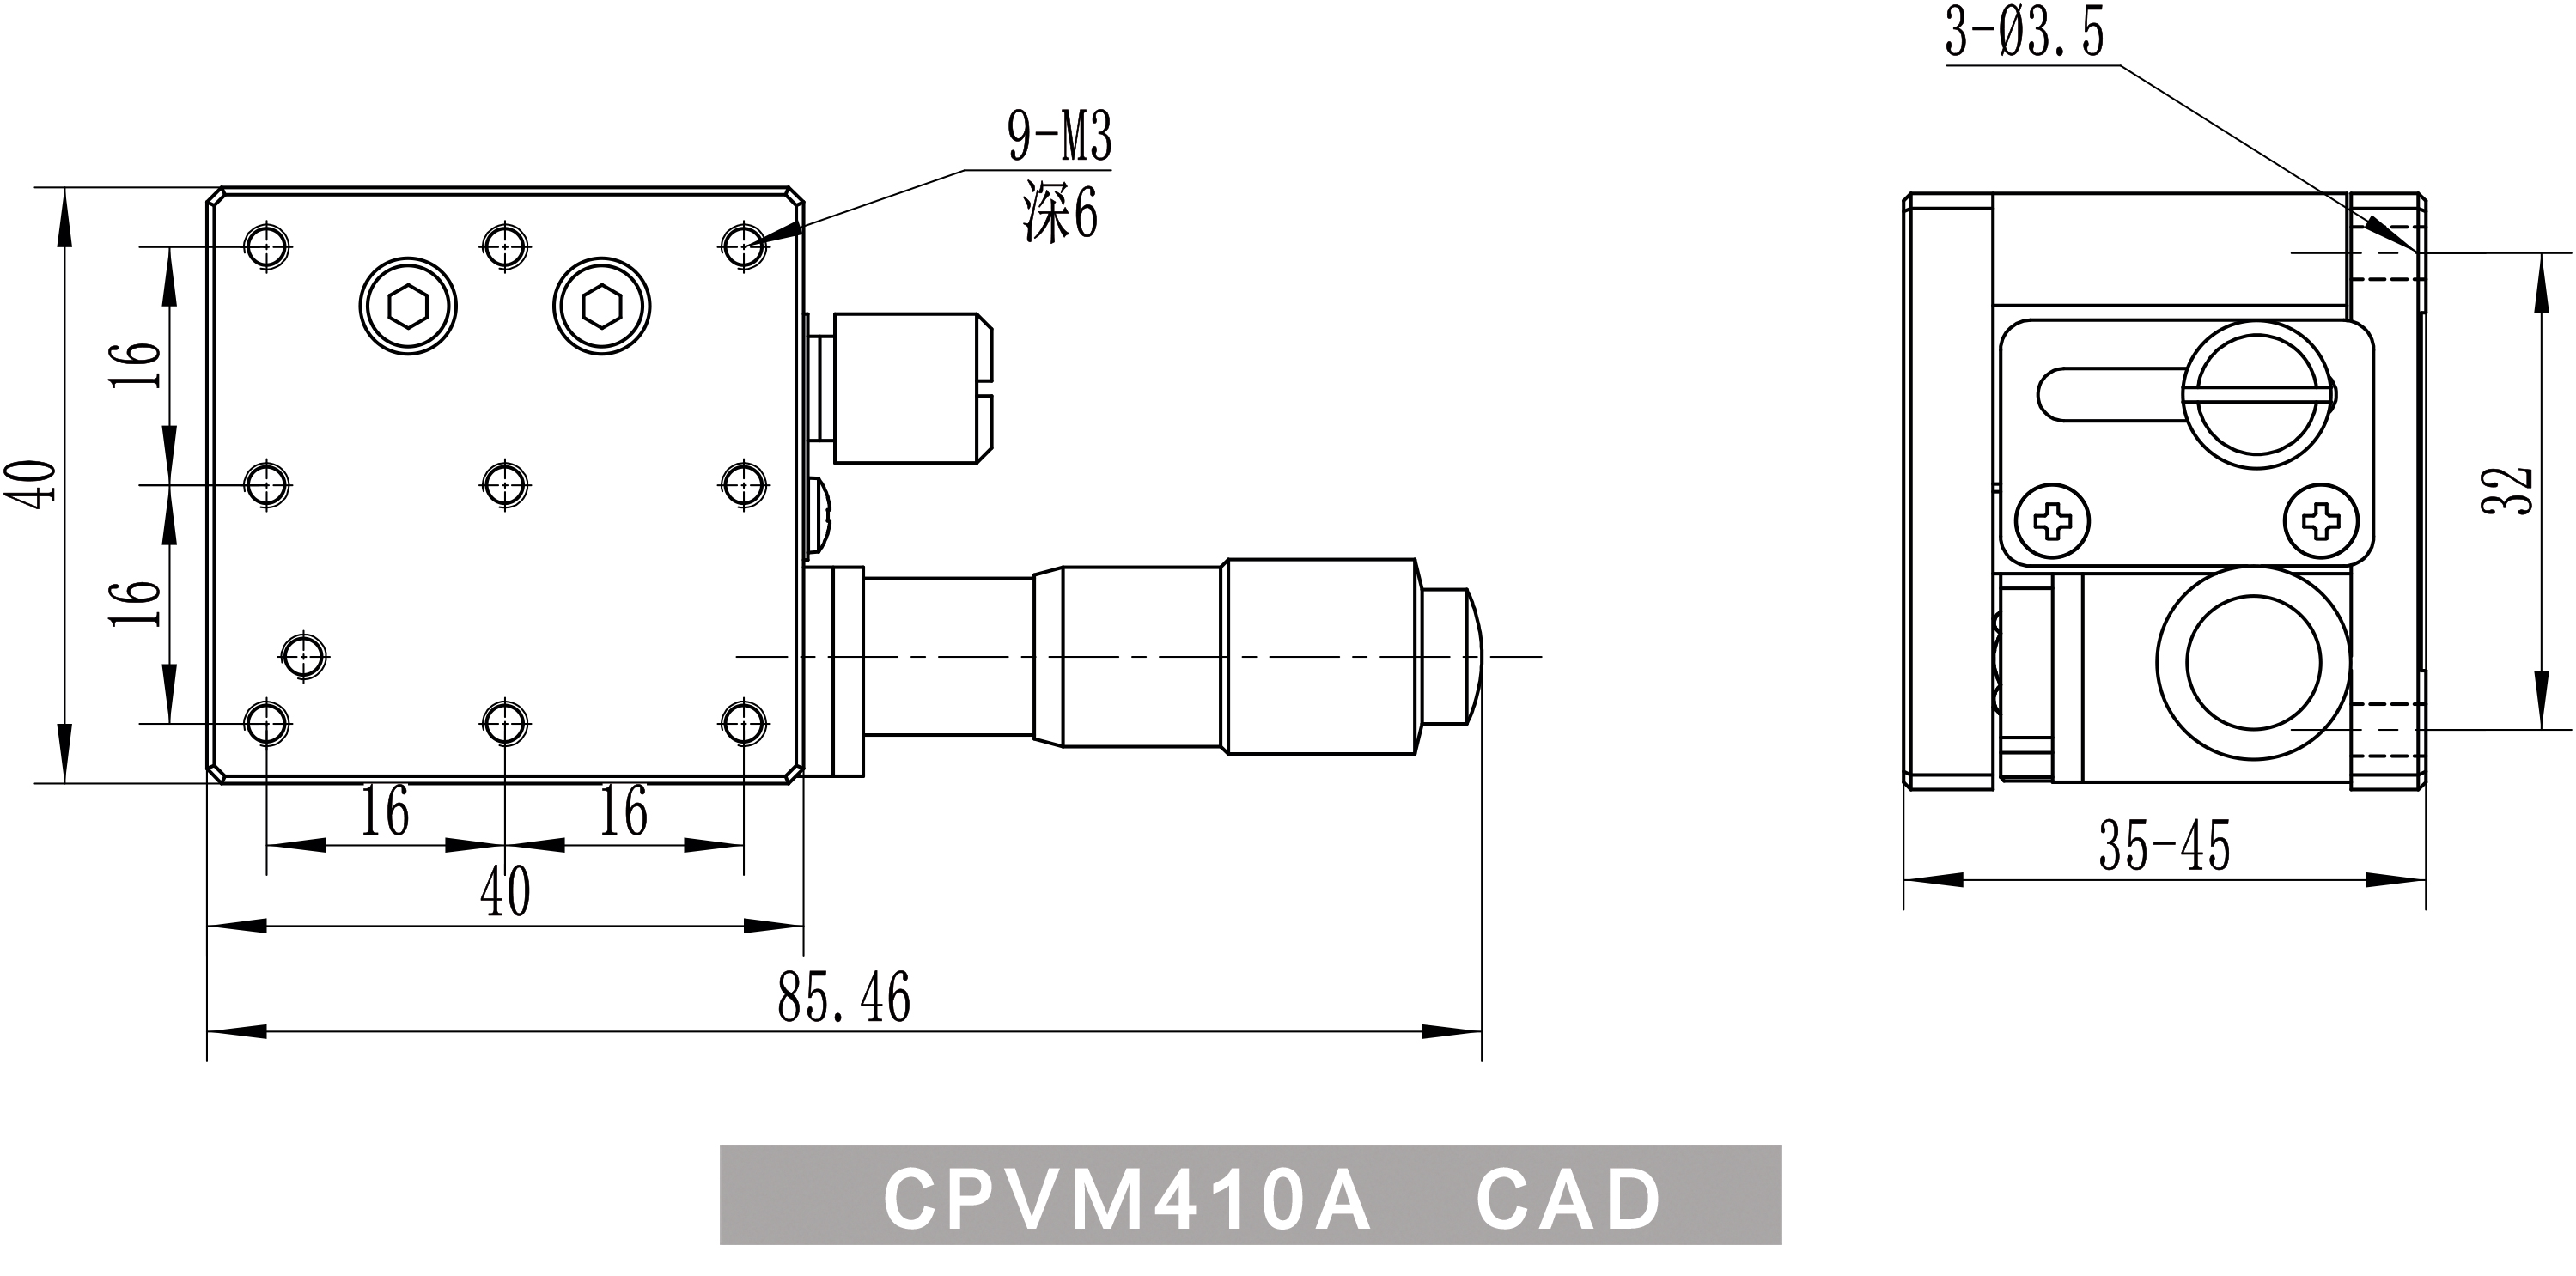 CPVM410A-CAD